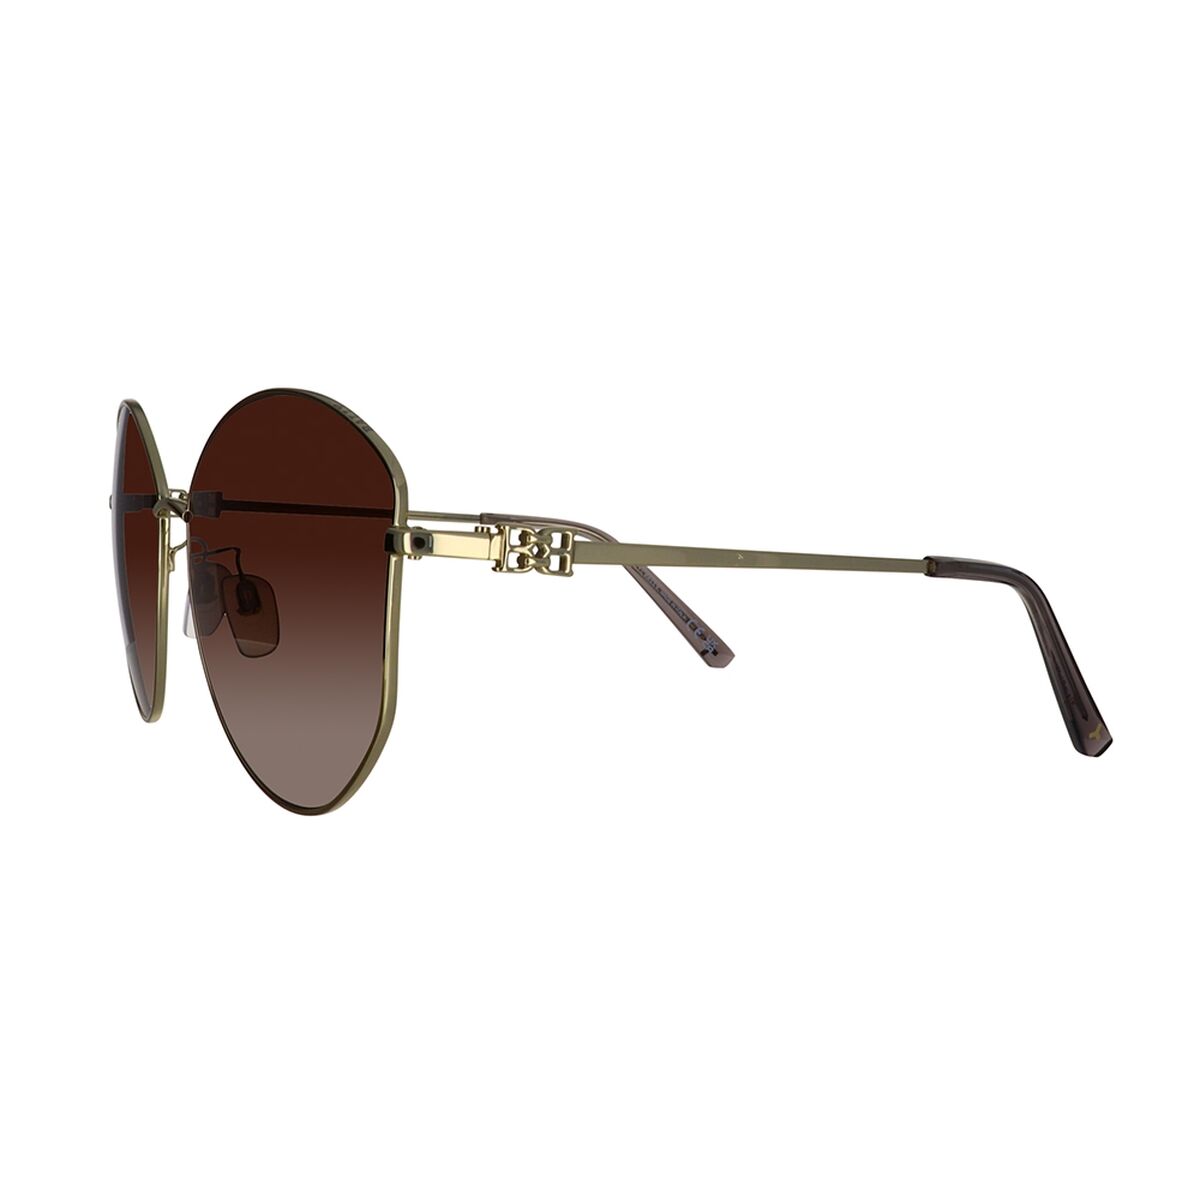 Kaufe Damensonnenbrille Bally BY0103_H-32T-61 bei AWK Flagship um € 124.00